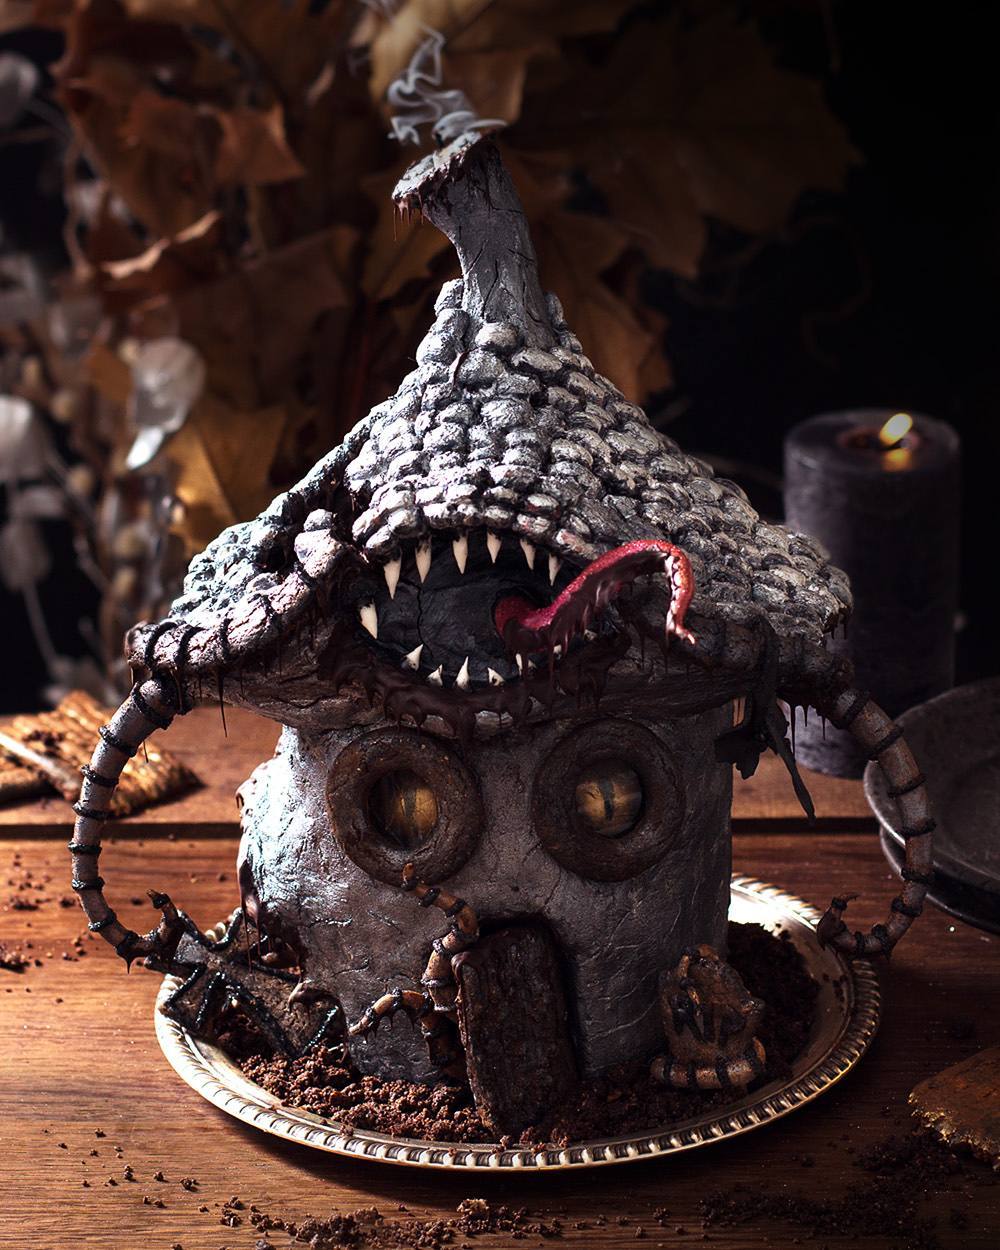 Les gâteaux monstrueux de Mélanie Launay